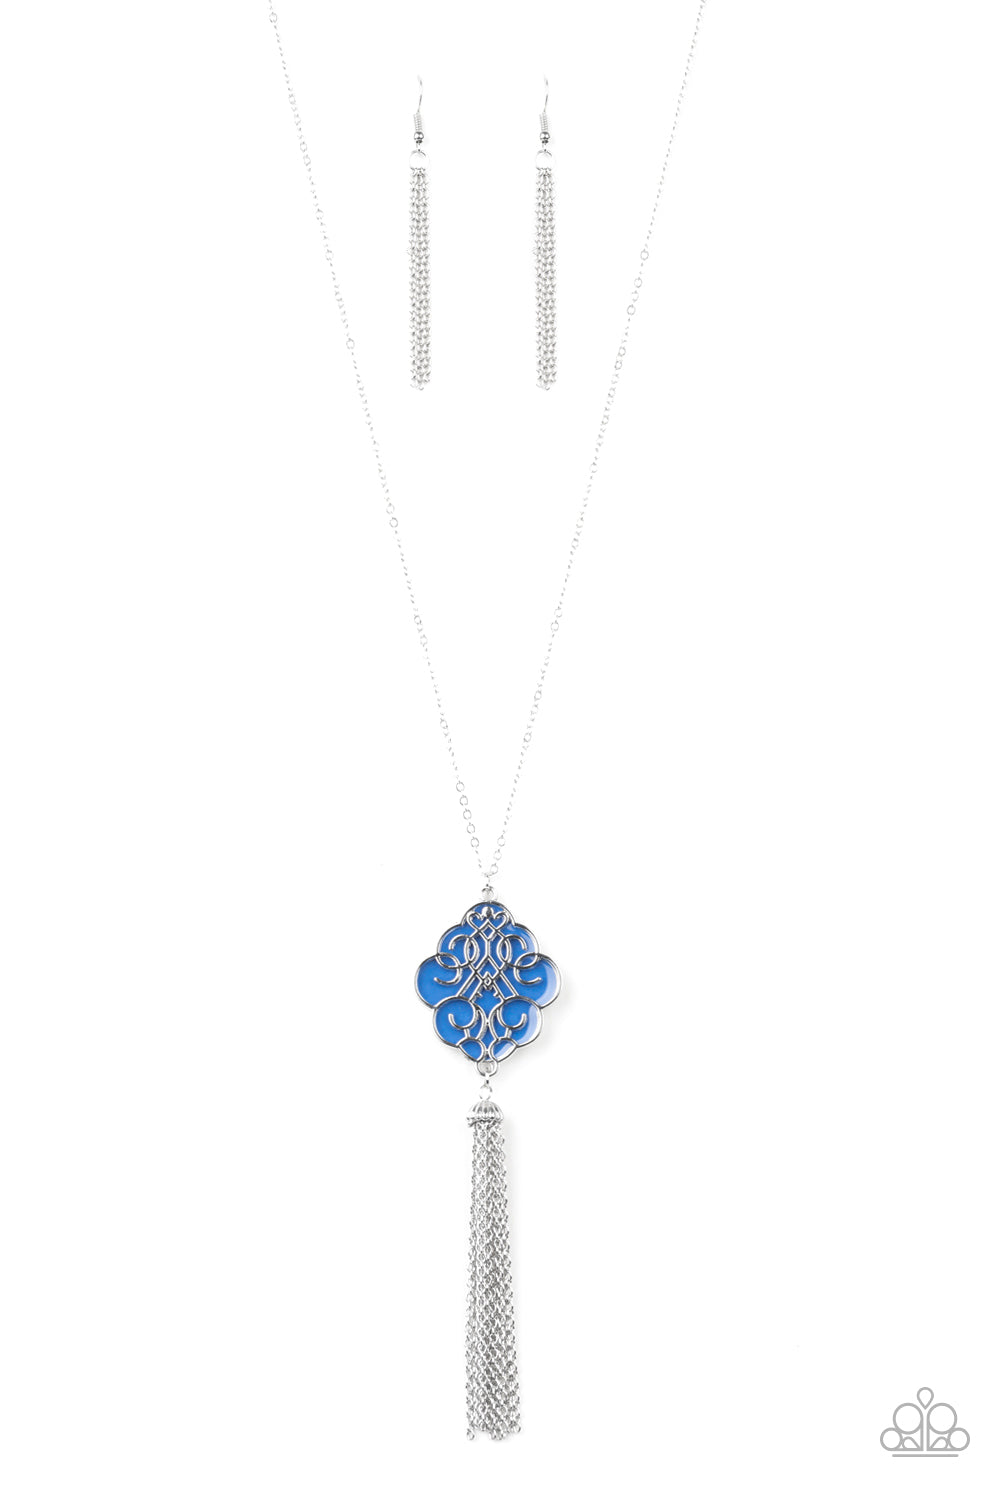 Paparazzi - Malibu Mandala - Blue & Silver Necklace